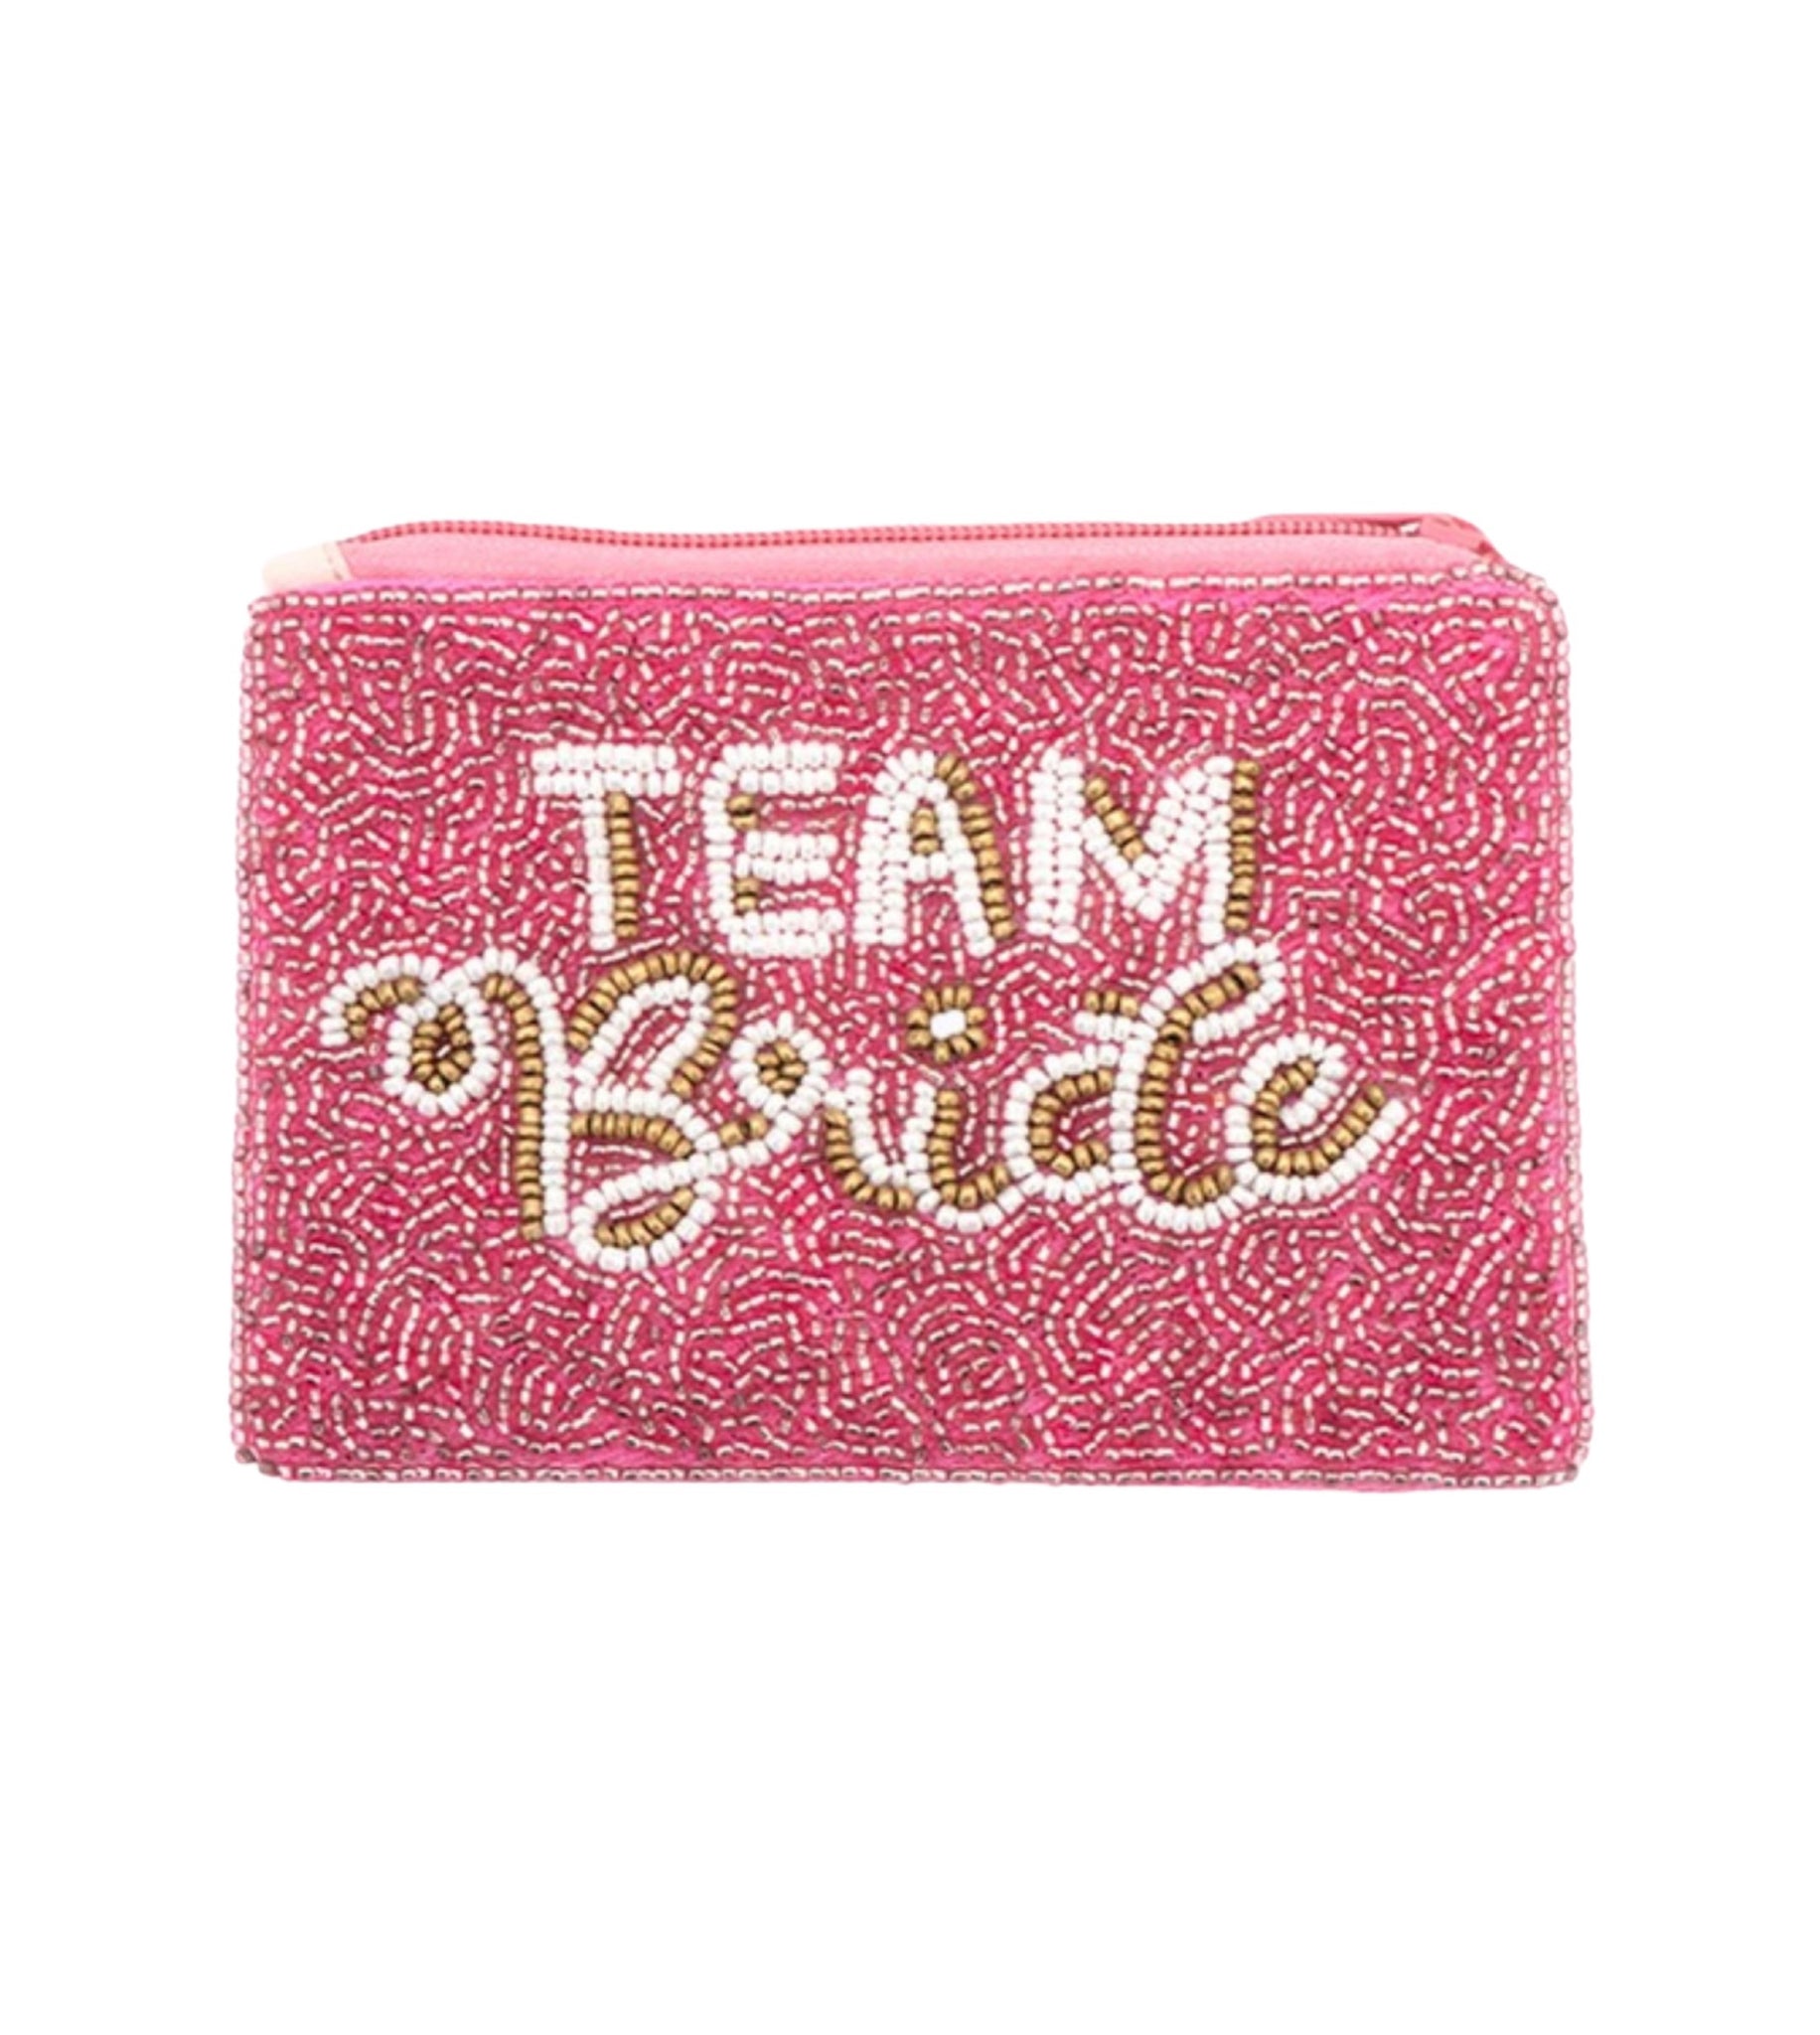 Team Bride Coin Bag